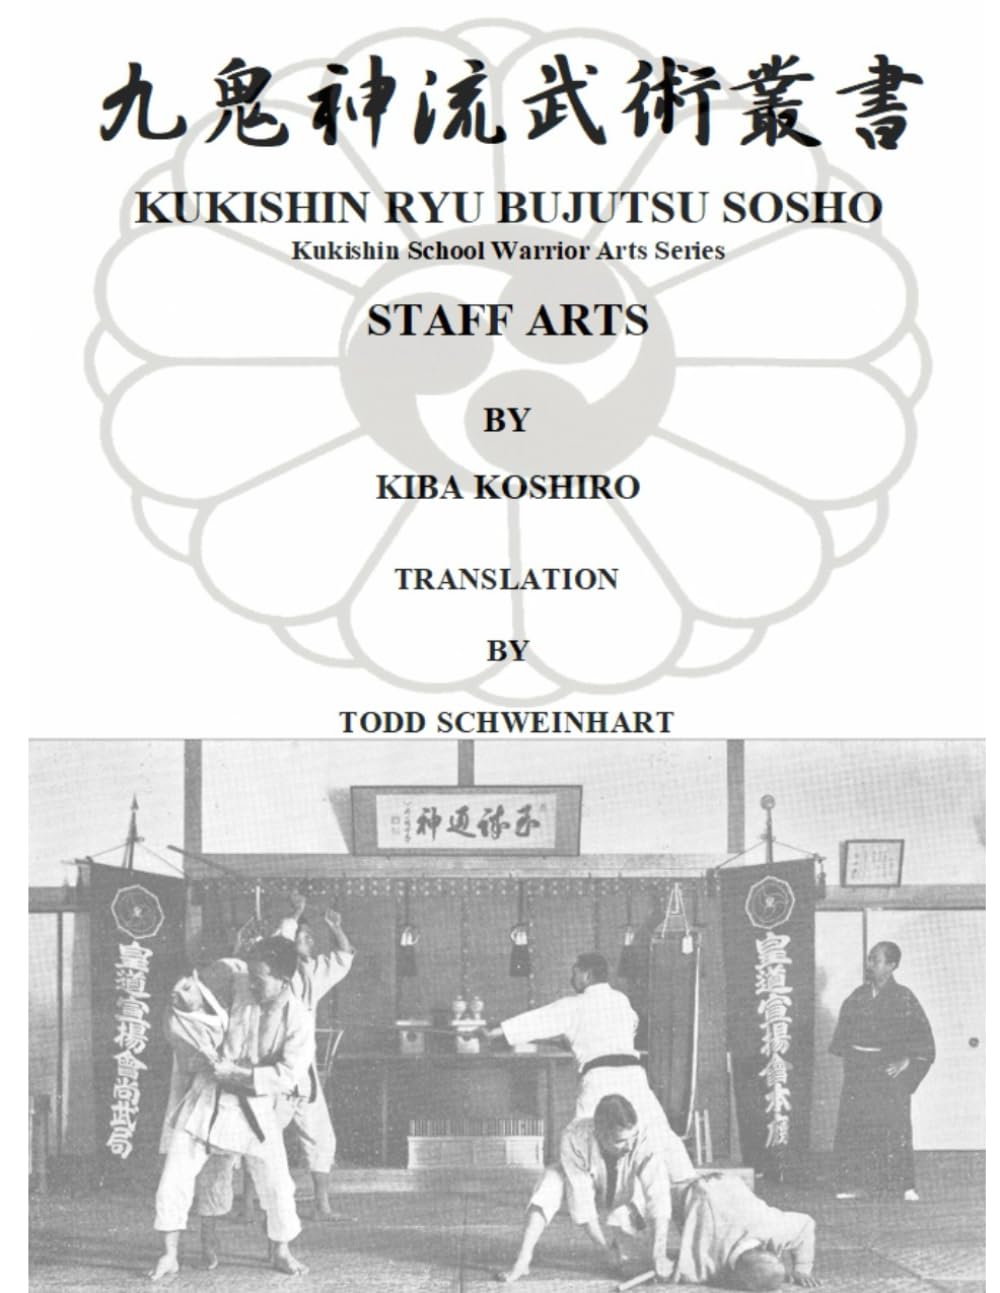 Kukishin Ryu Bujutsu: Bojutsu Staff Arts Book by Koshiro Kiba & Todd Schweinhart